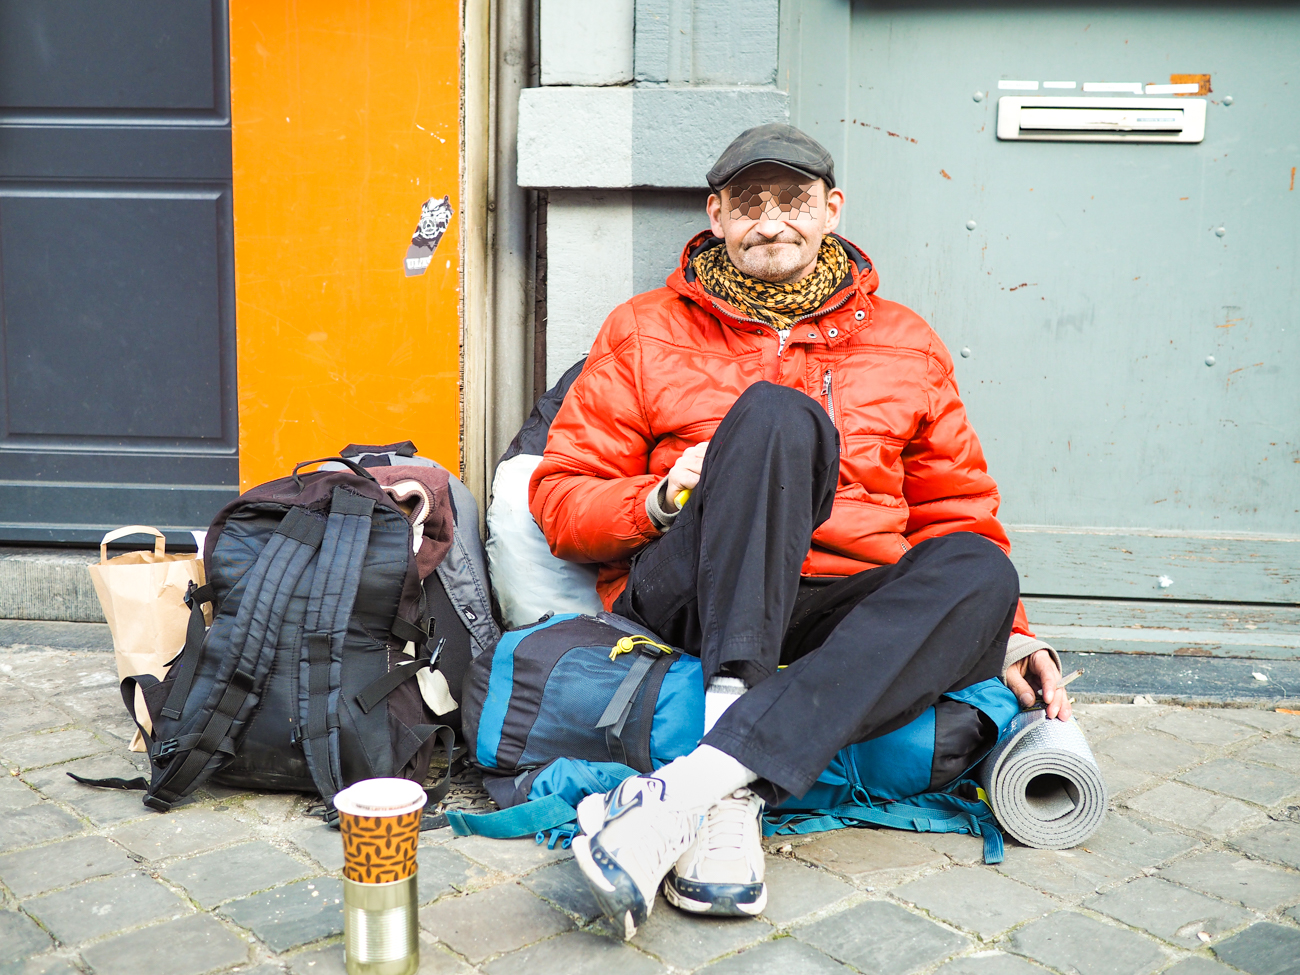 Infirmiers de rue Liège recherche 50.000 € pour aider des personnes sans-abri